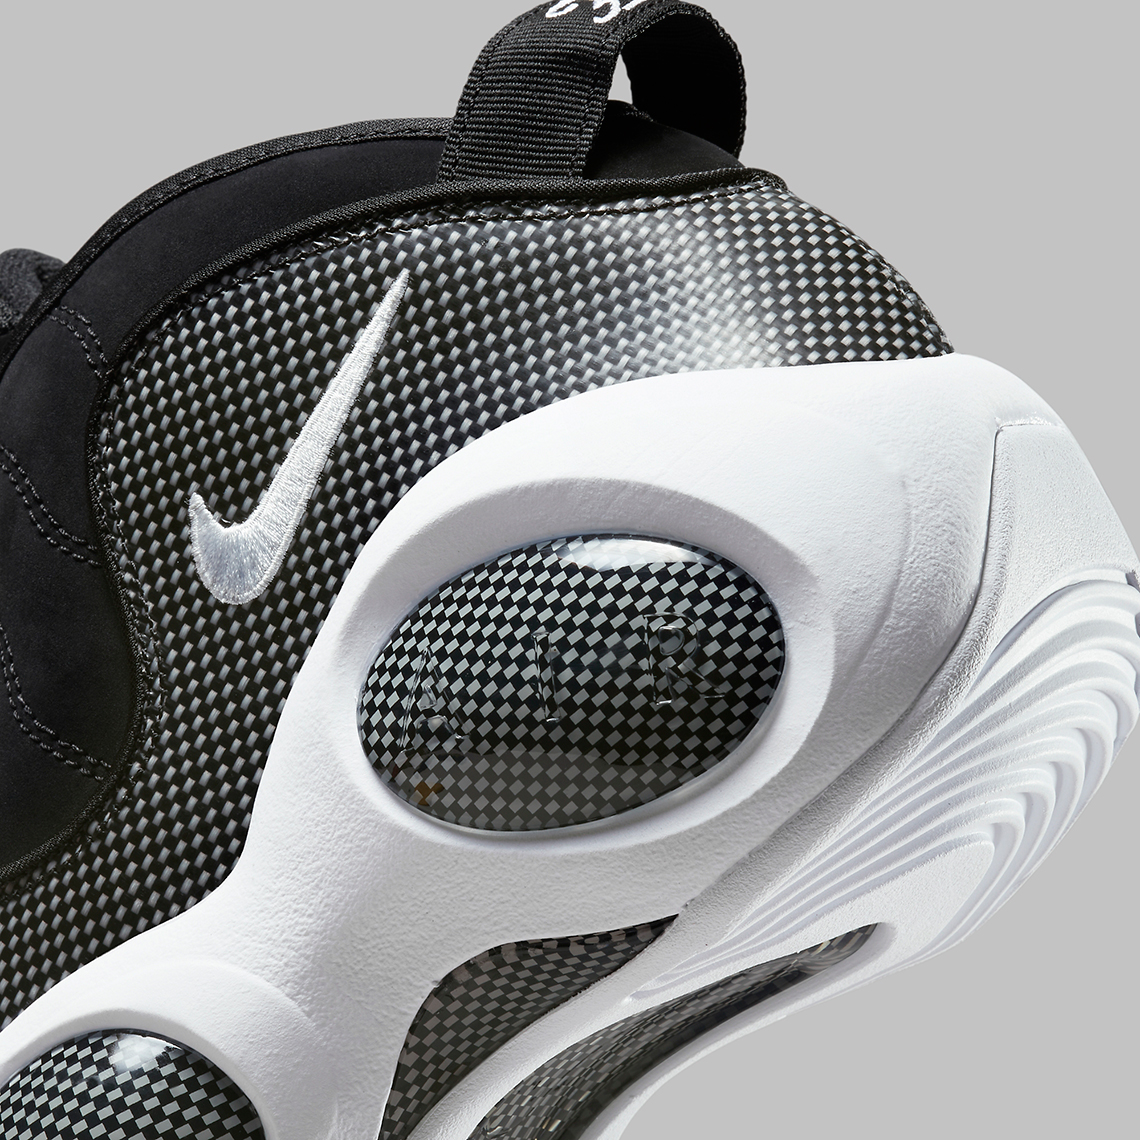 Nike Zoom Flight 95 OG White Black DM0523-001 | SneakerNews.com